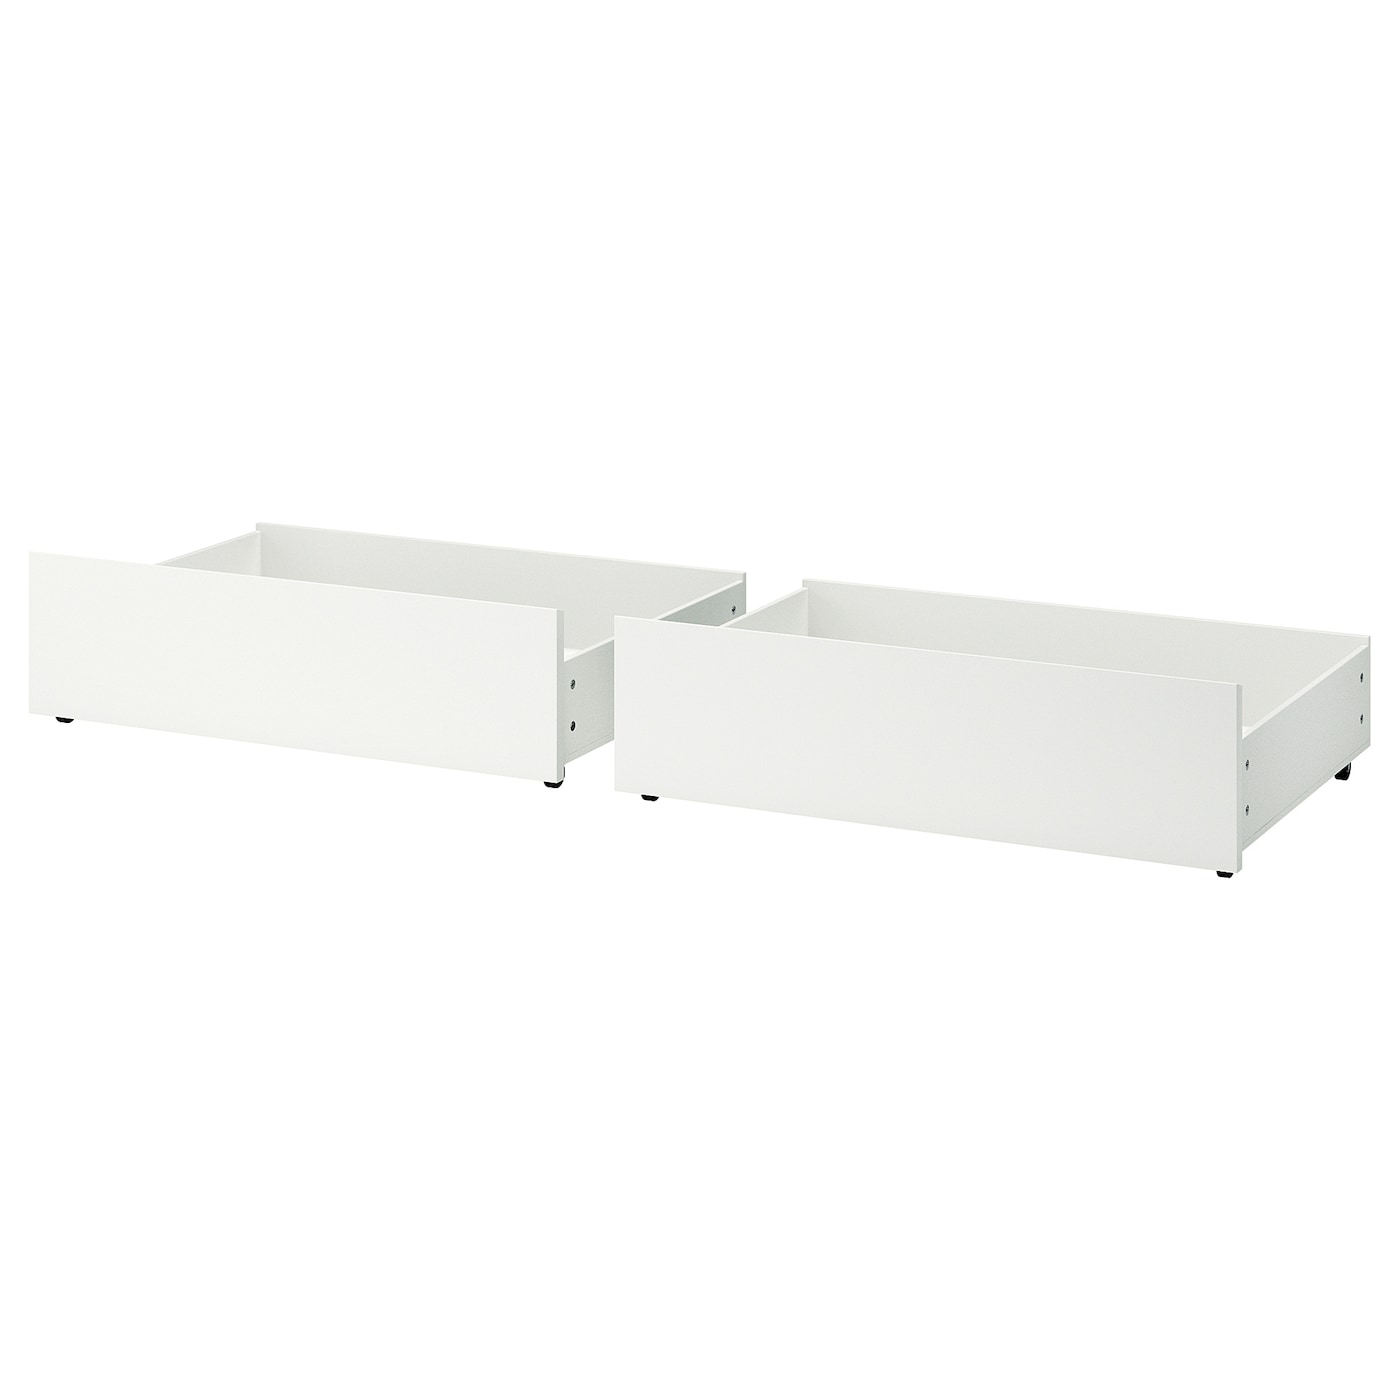 Ящик д/высокого каркаса кровати - IKEA MALM, белый, 200 см МАЛЬМ ИКЕА